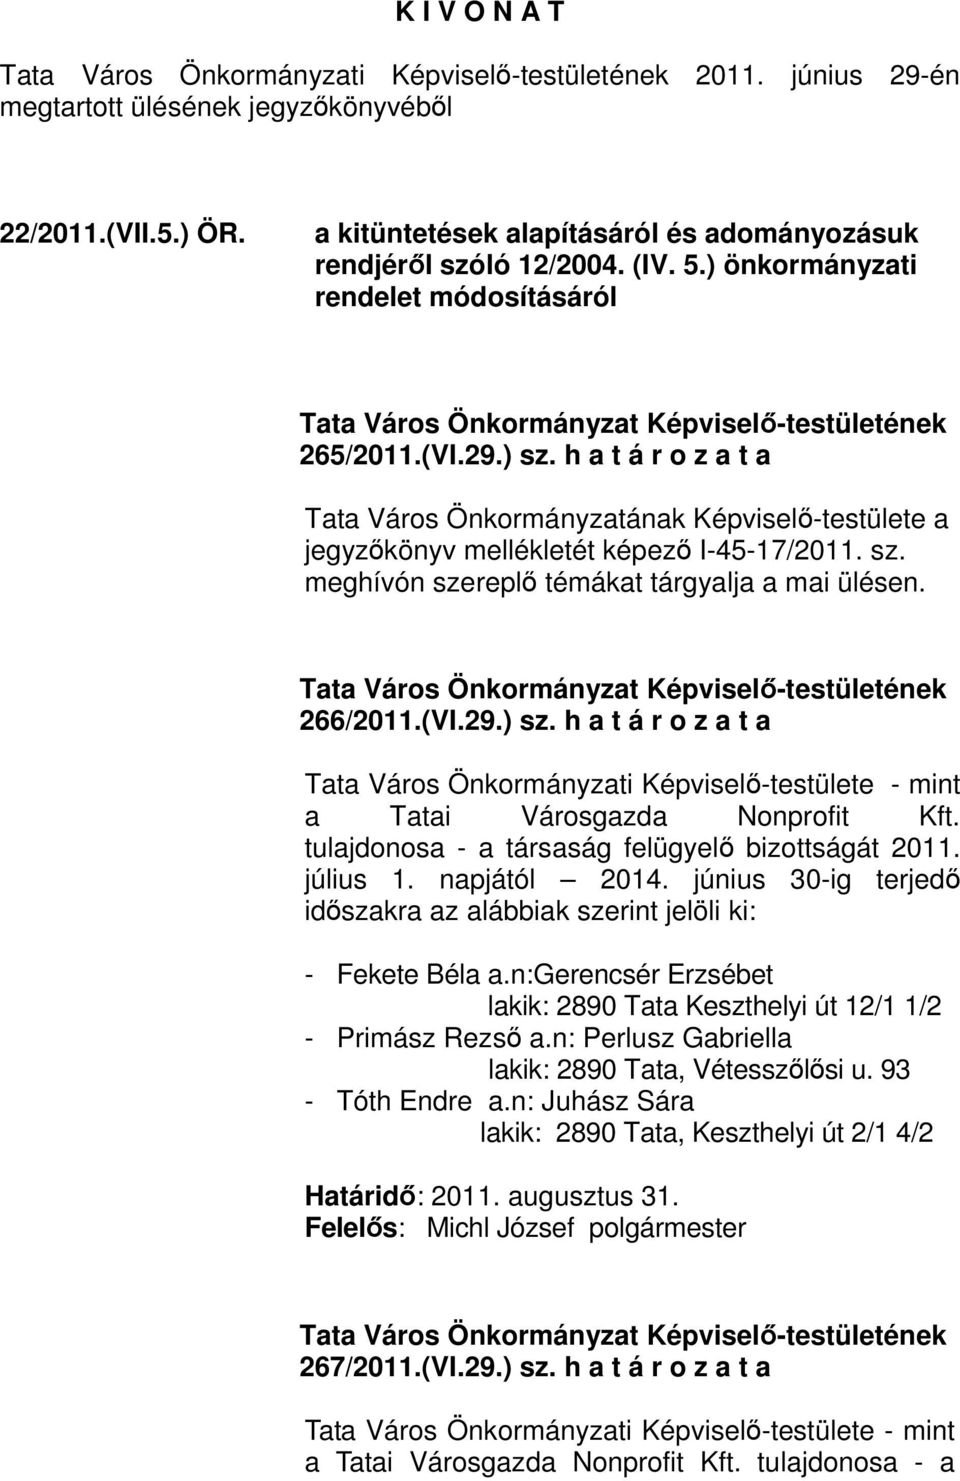 h a t á r o z a t a Tata Város Önkormányzatának Képviselı-testülete a jegyzıkönyv mellékletét képezı I-45-17/2011. sz. meghívón szereplı témákat tárgyalja a mai ülésen. 266/2011.(VI.29.) sz.